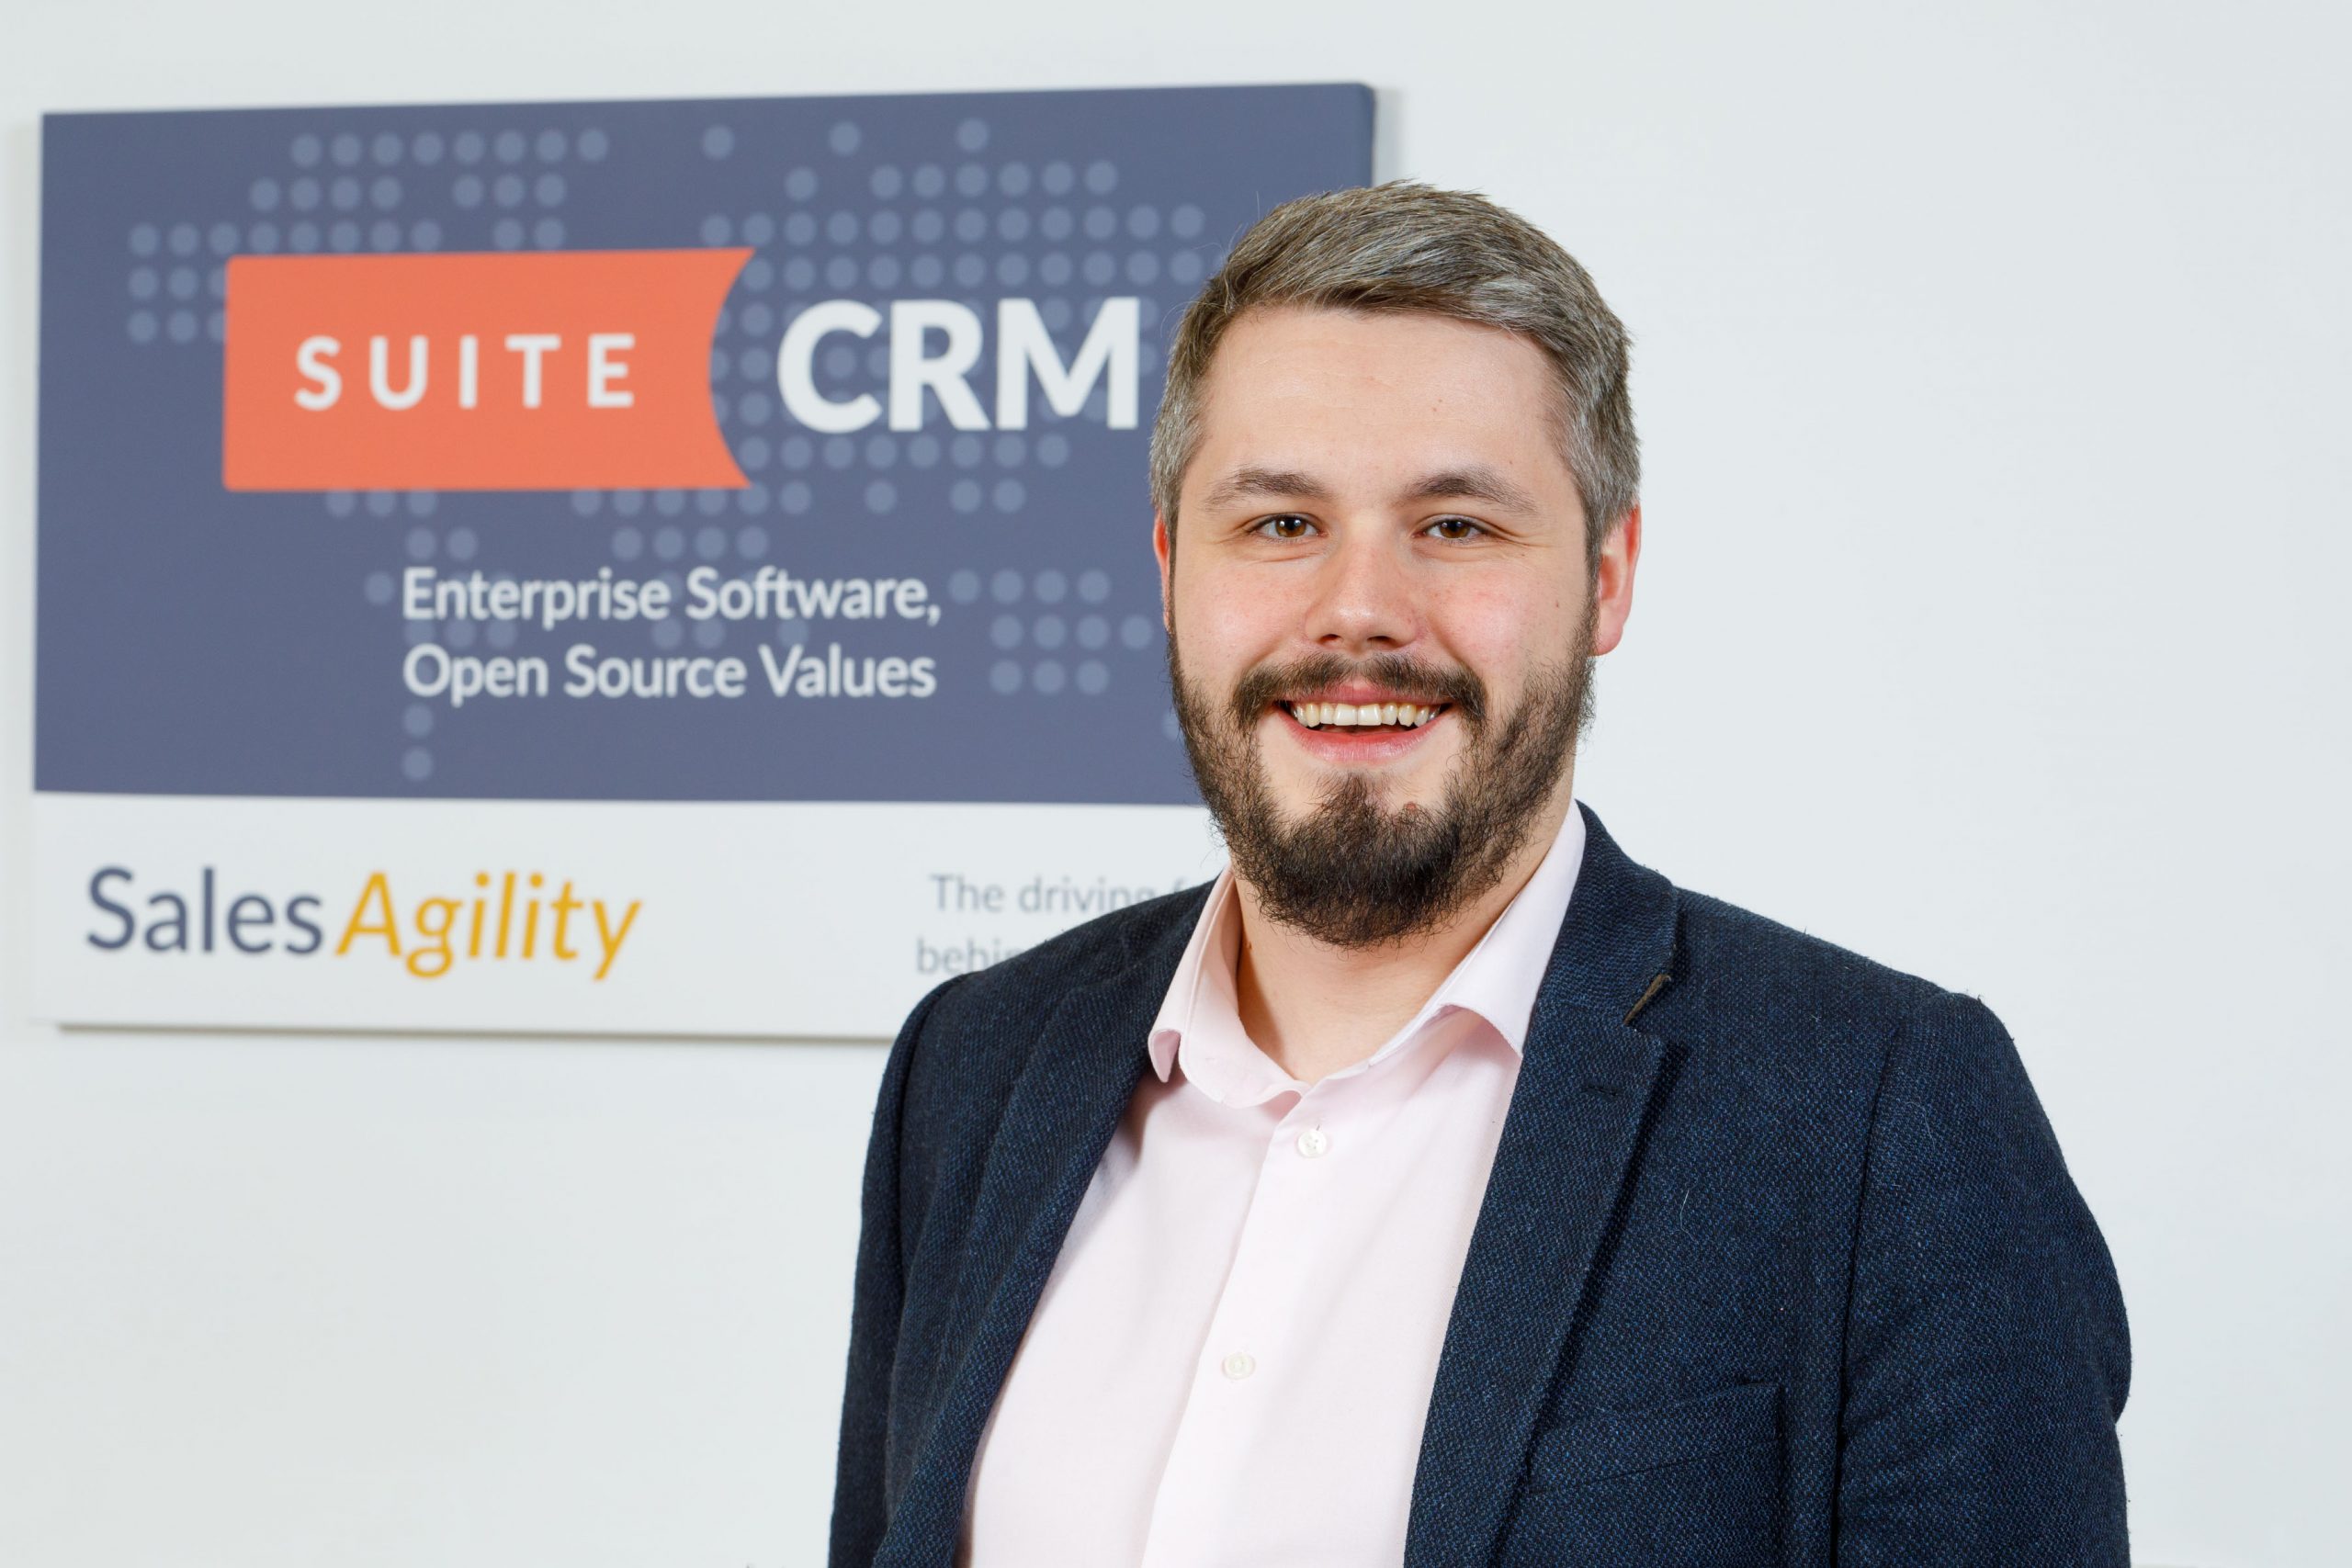 SalesAgility and Nextcloud announce SuiteCRM integration collaboration